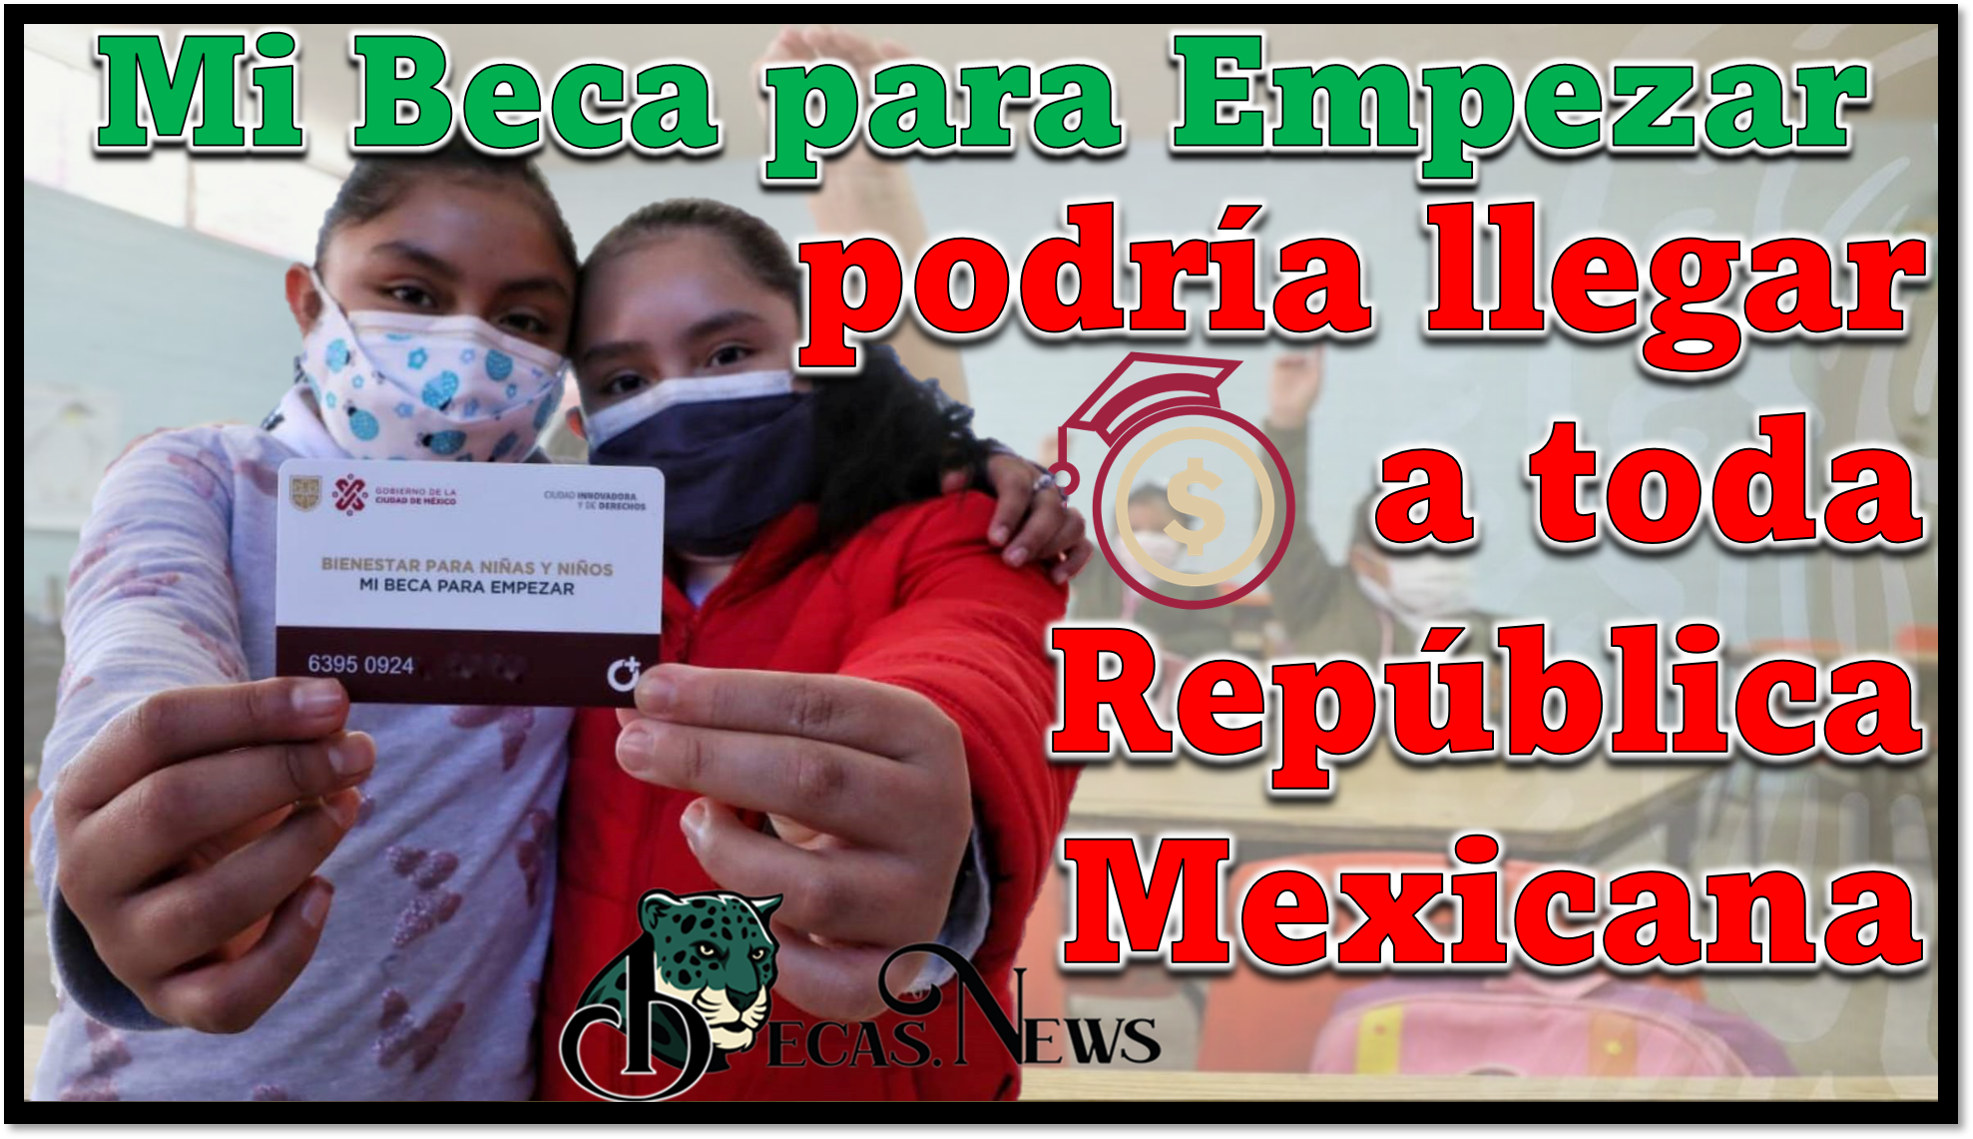 Mi Beca para Empezar: Esta beca podría llevarse a todos los estados de la República Mexicana